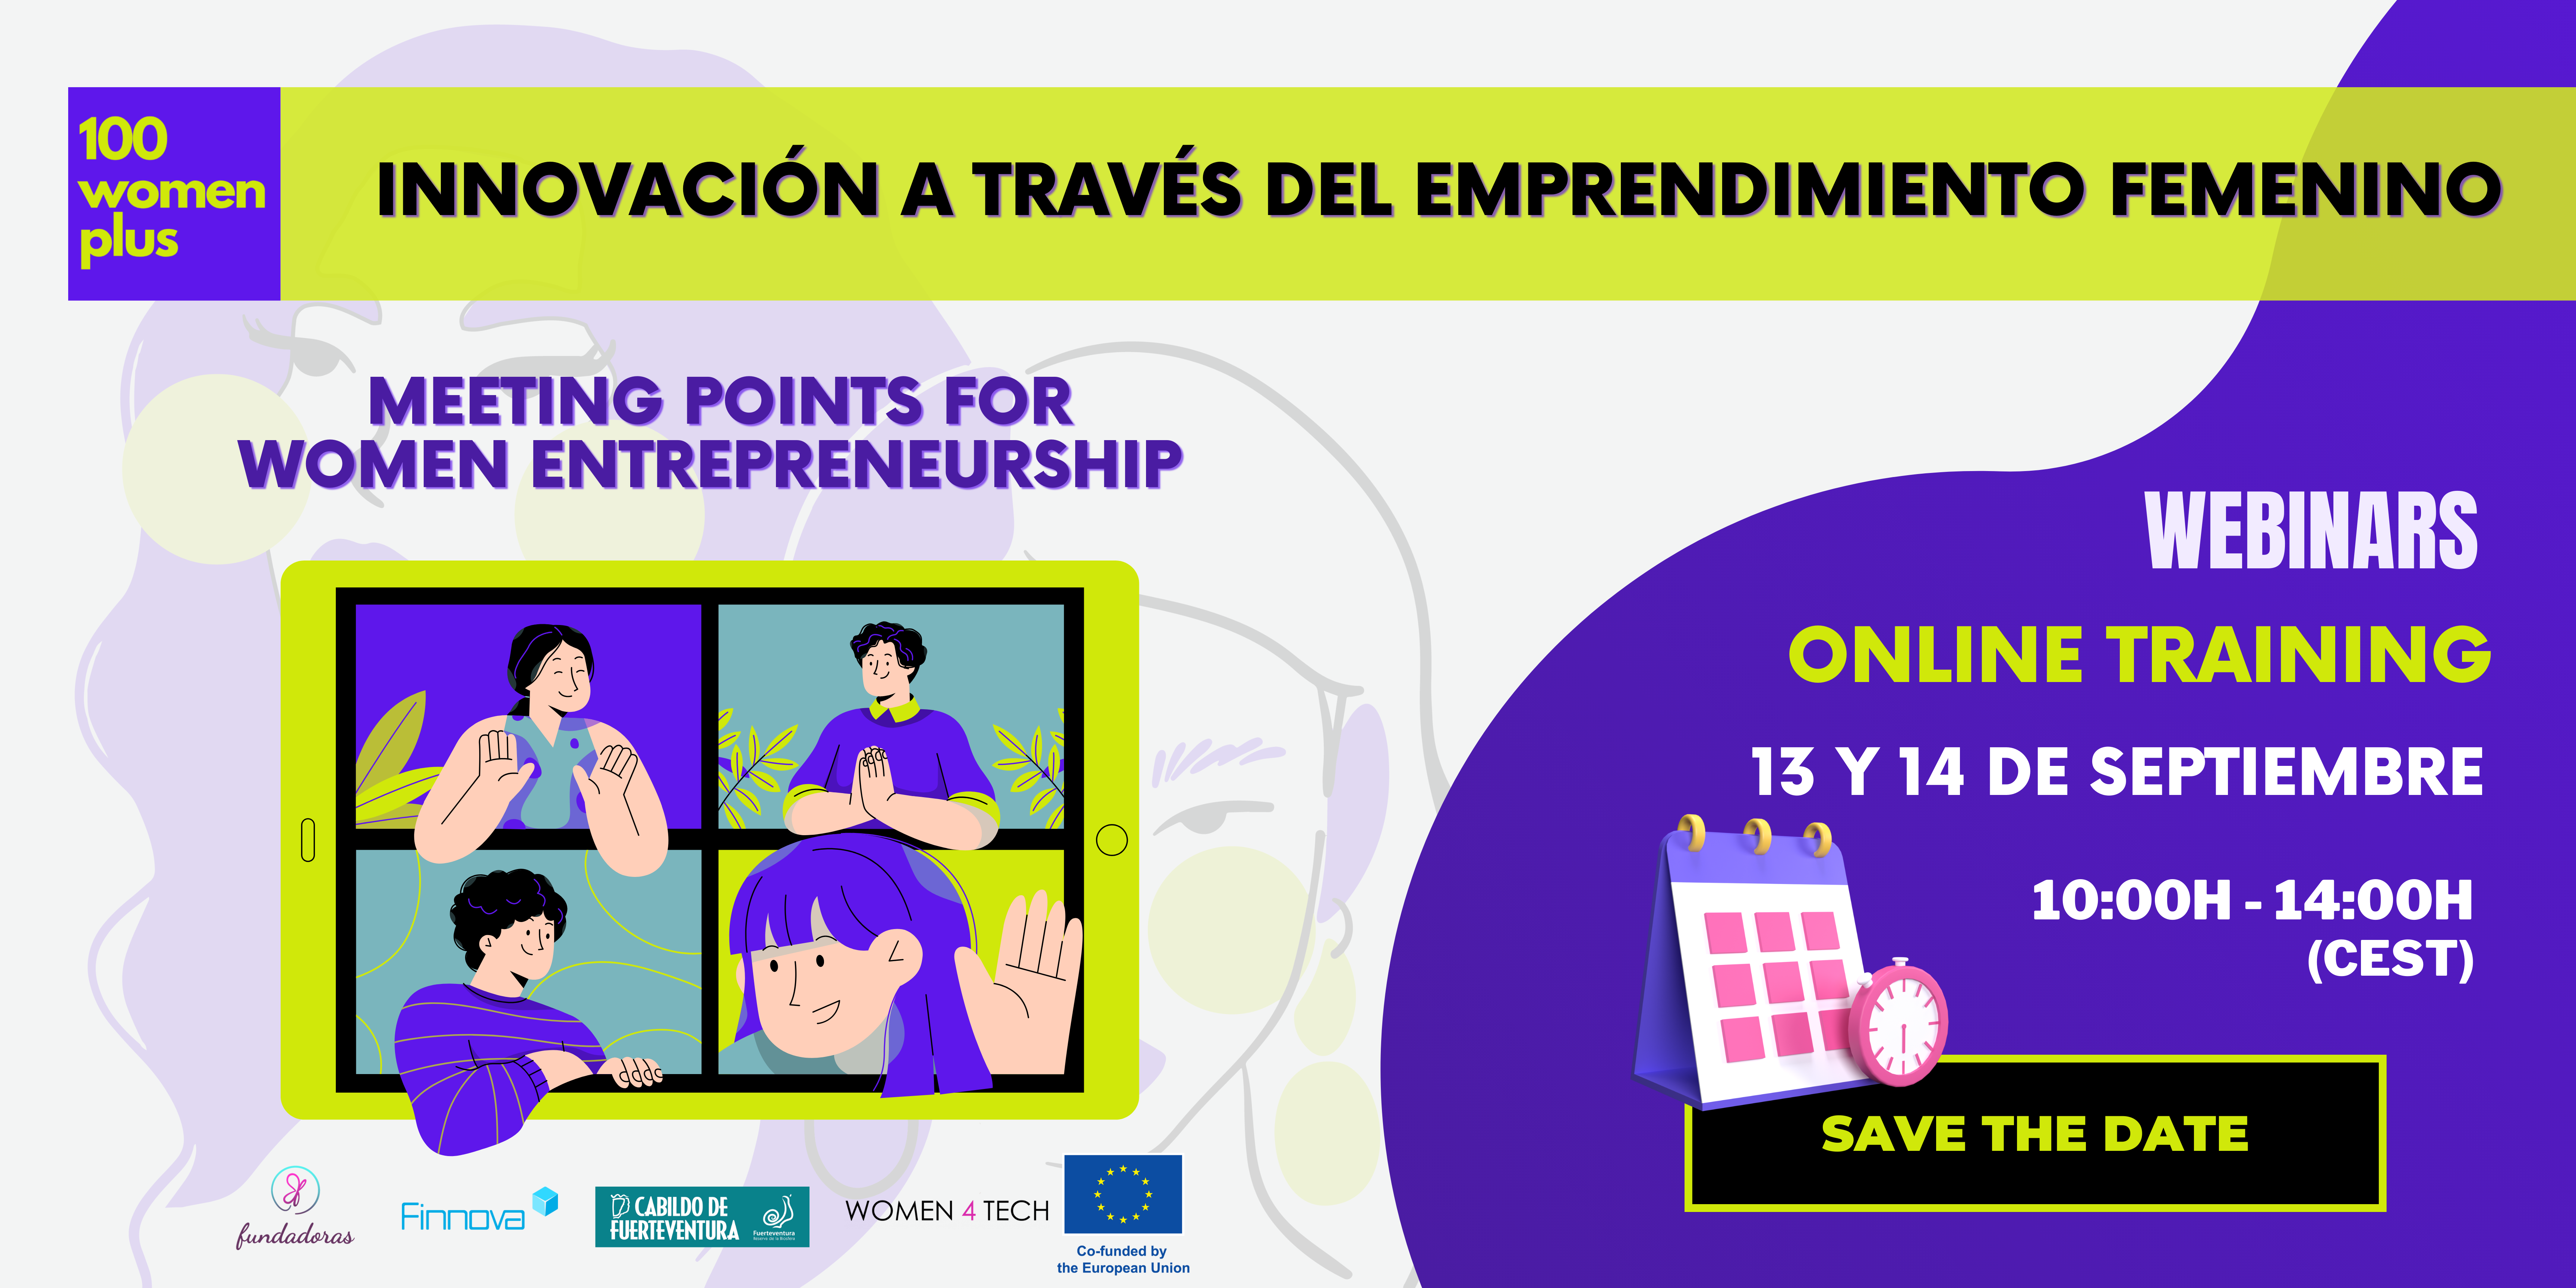 Lanzamiento del seminario online “Innovación a través del emprendimiento femenino” el 13 y 14 de septiembre 